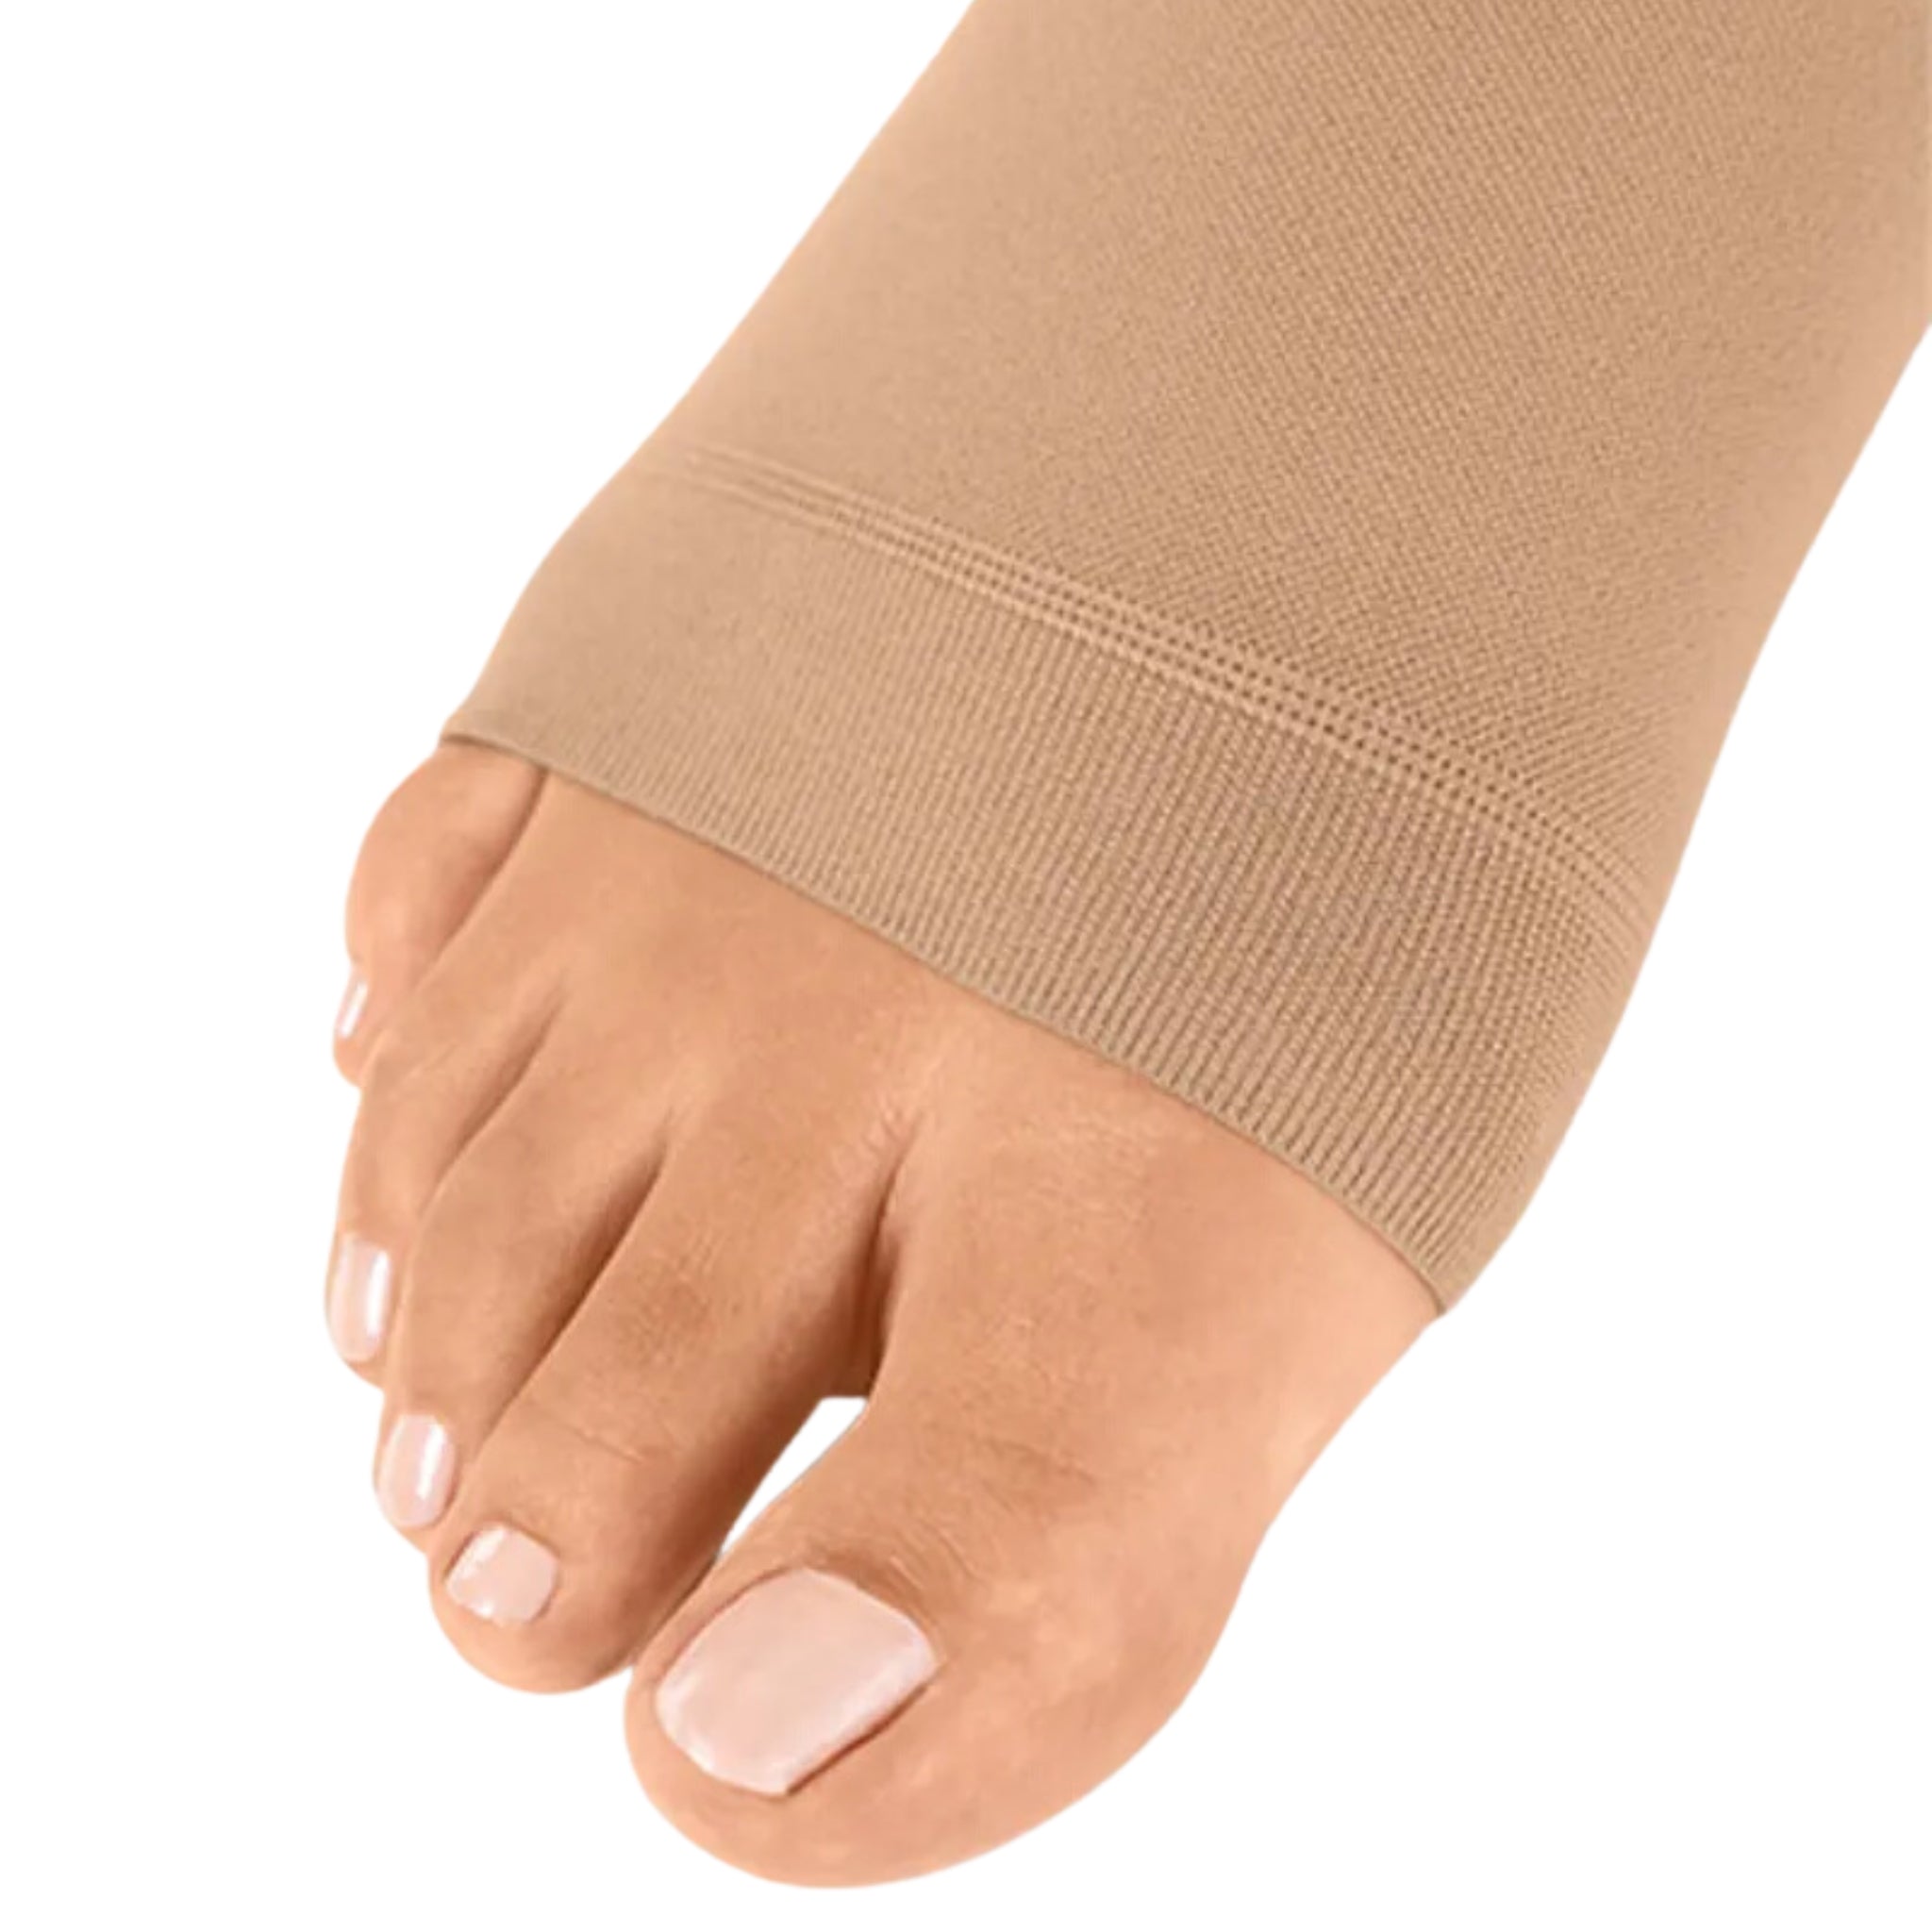 mediven elegance® Knee High Compression Stockings Beige